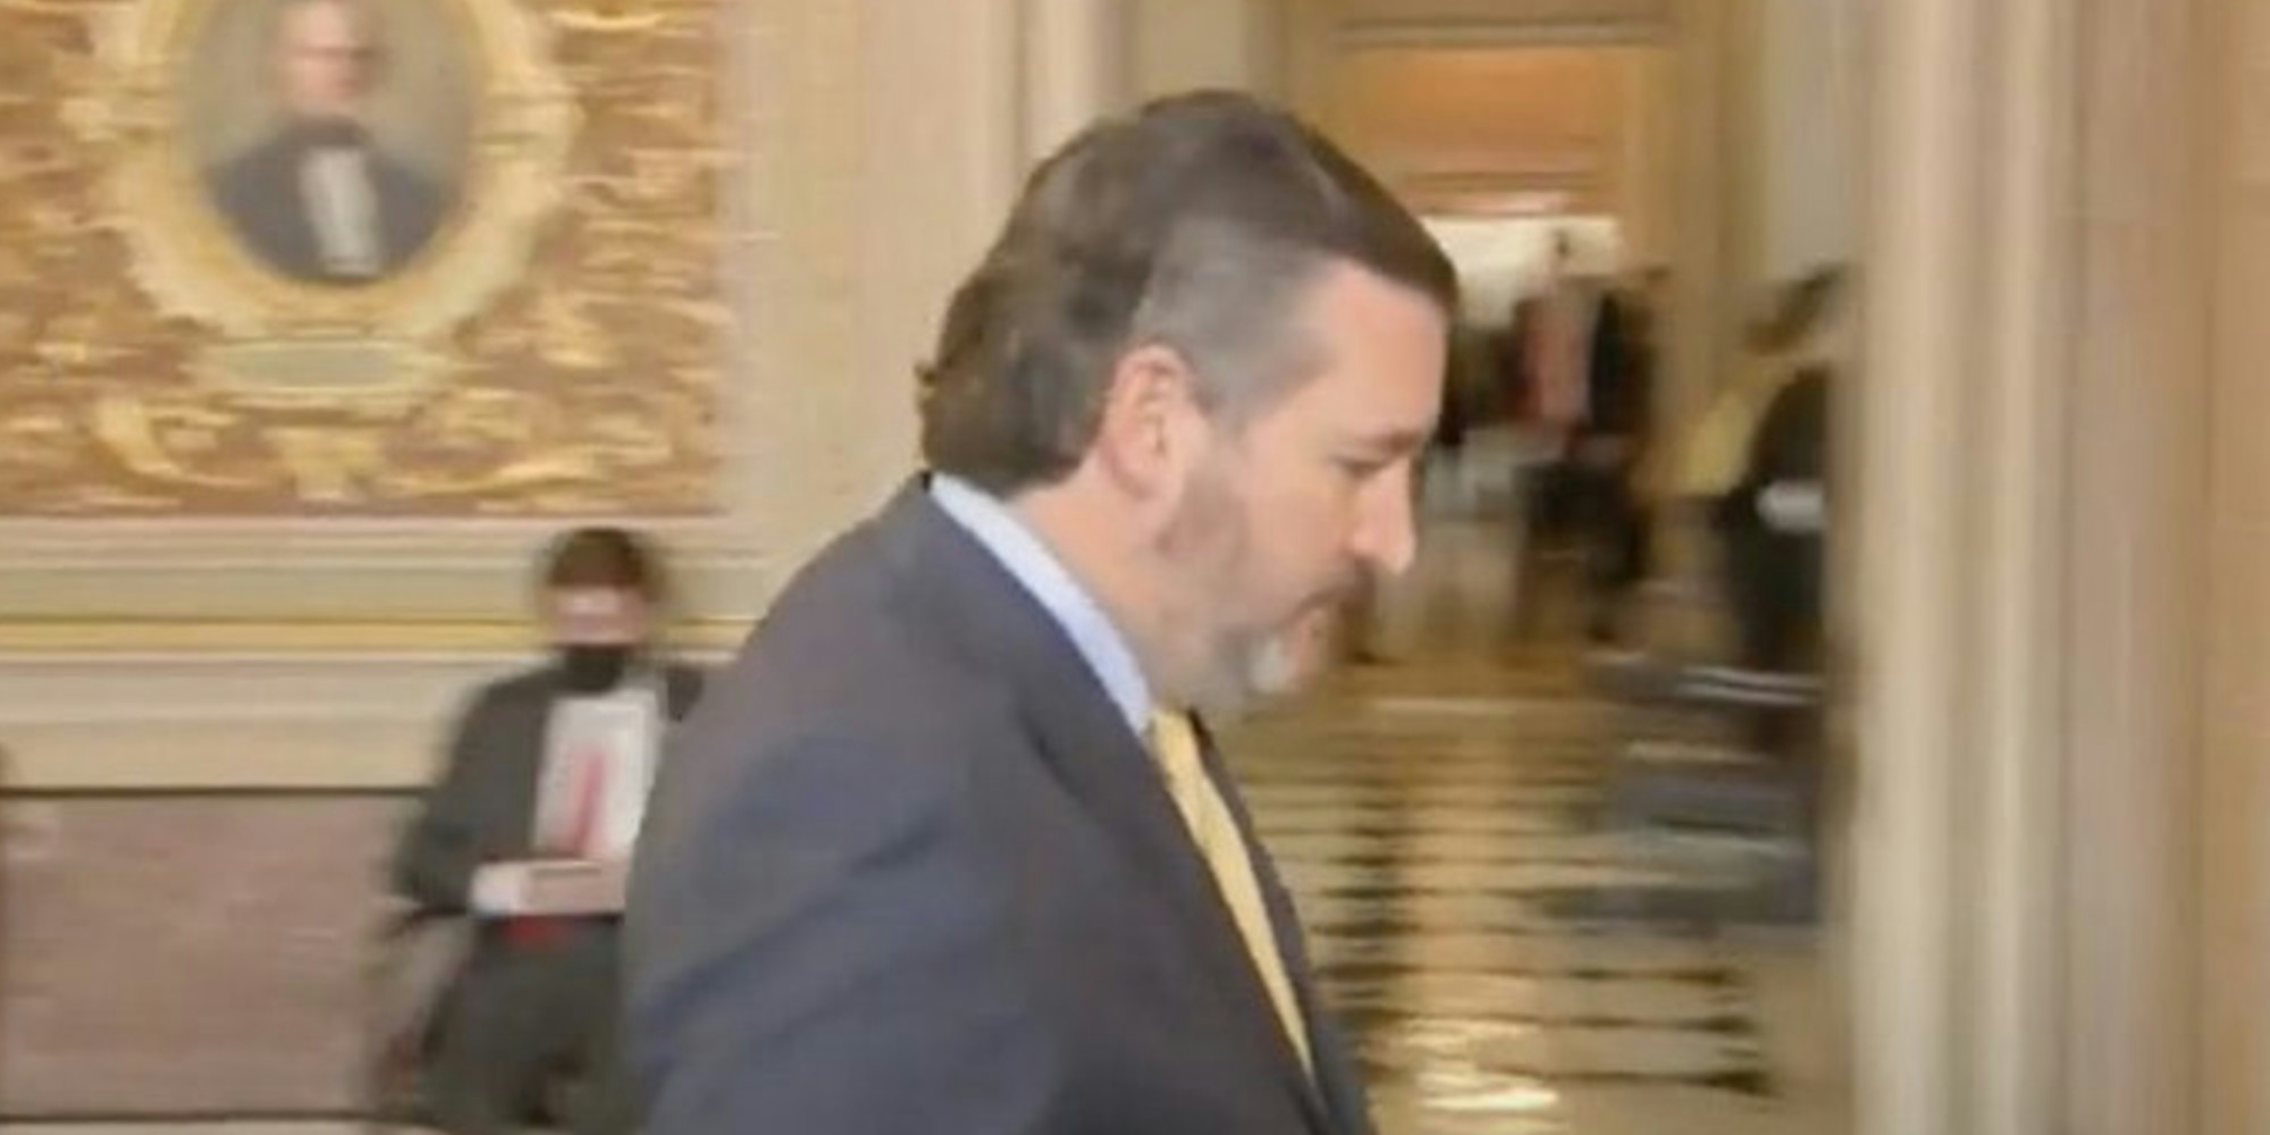 Sen. Ted Cruz (R-Tx.) and his haircut